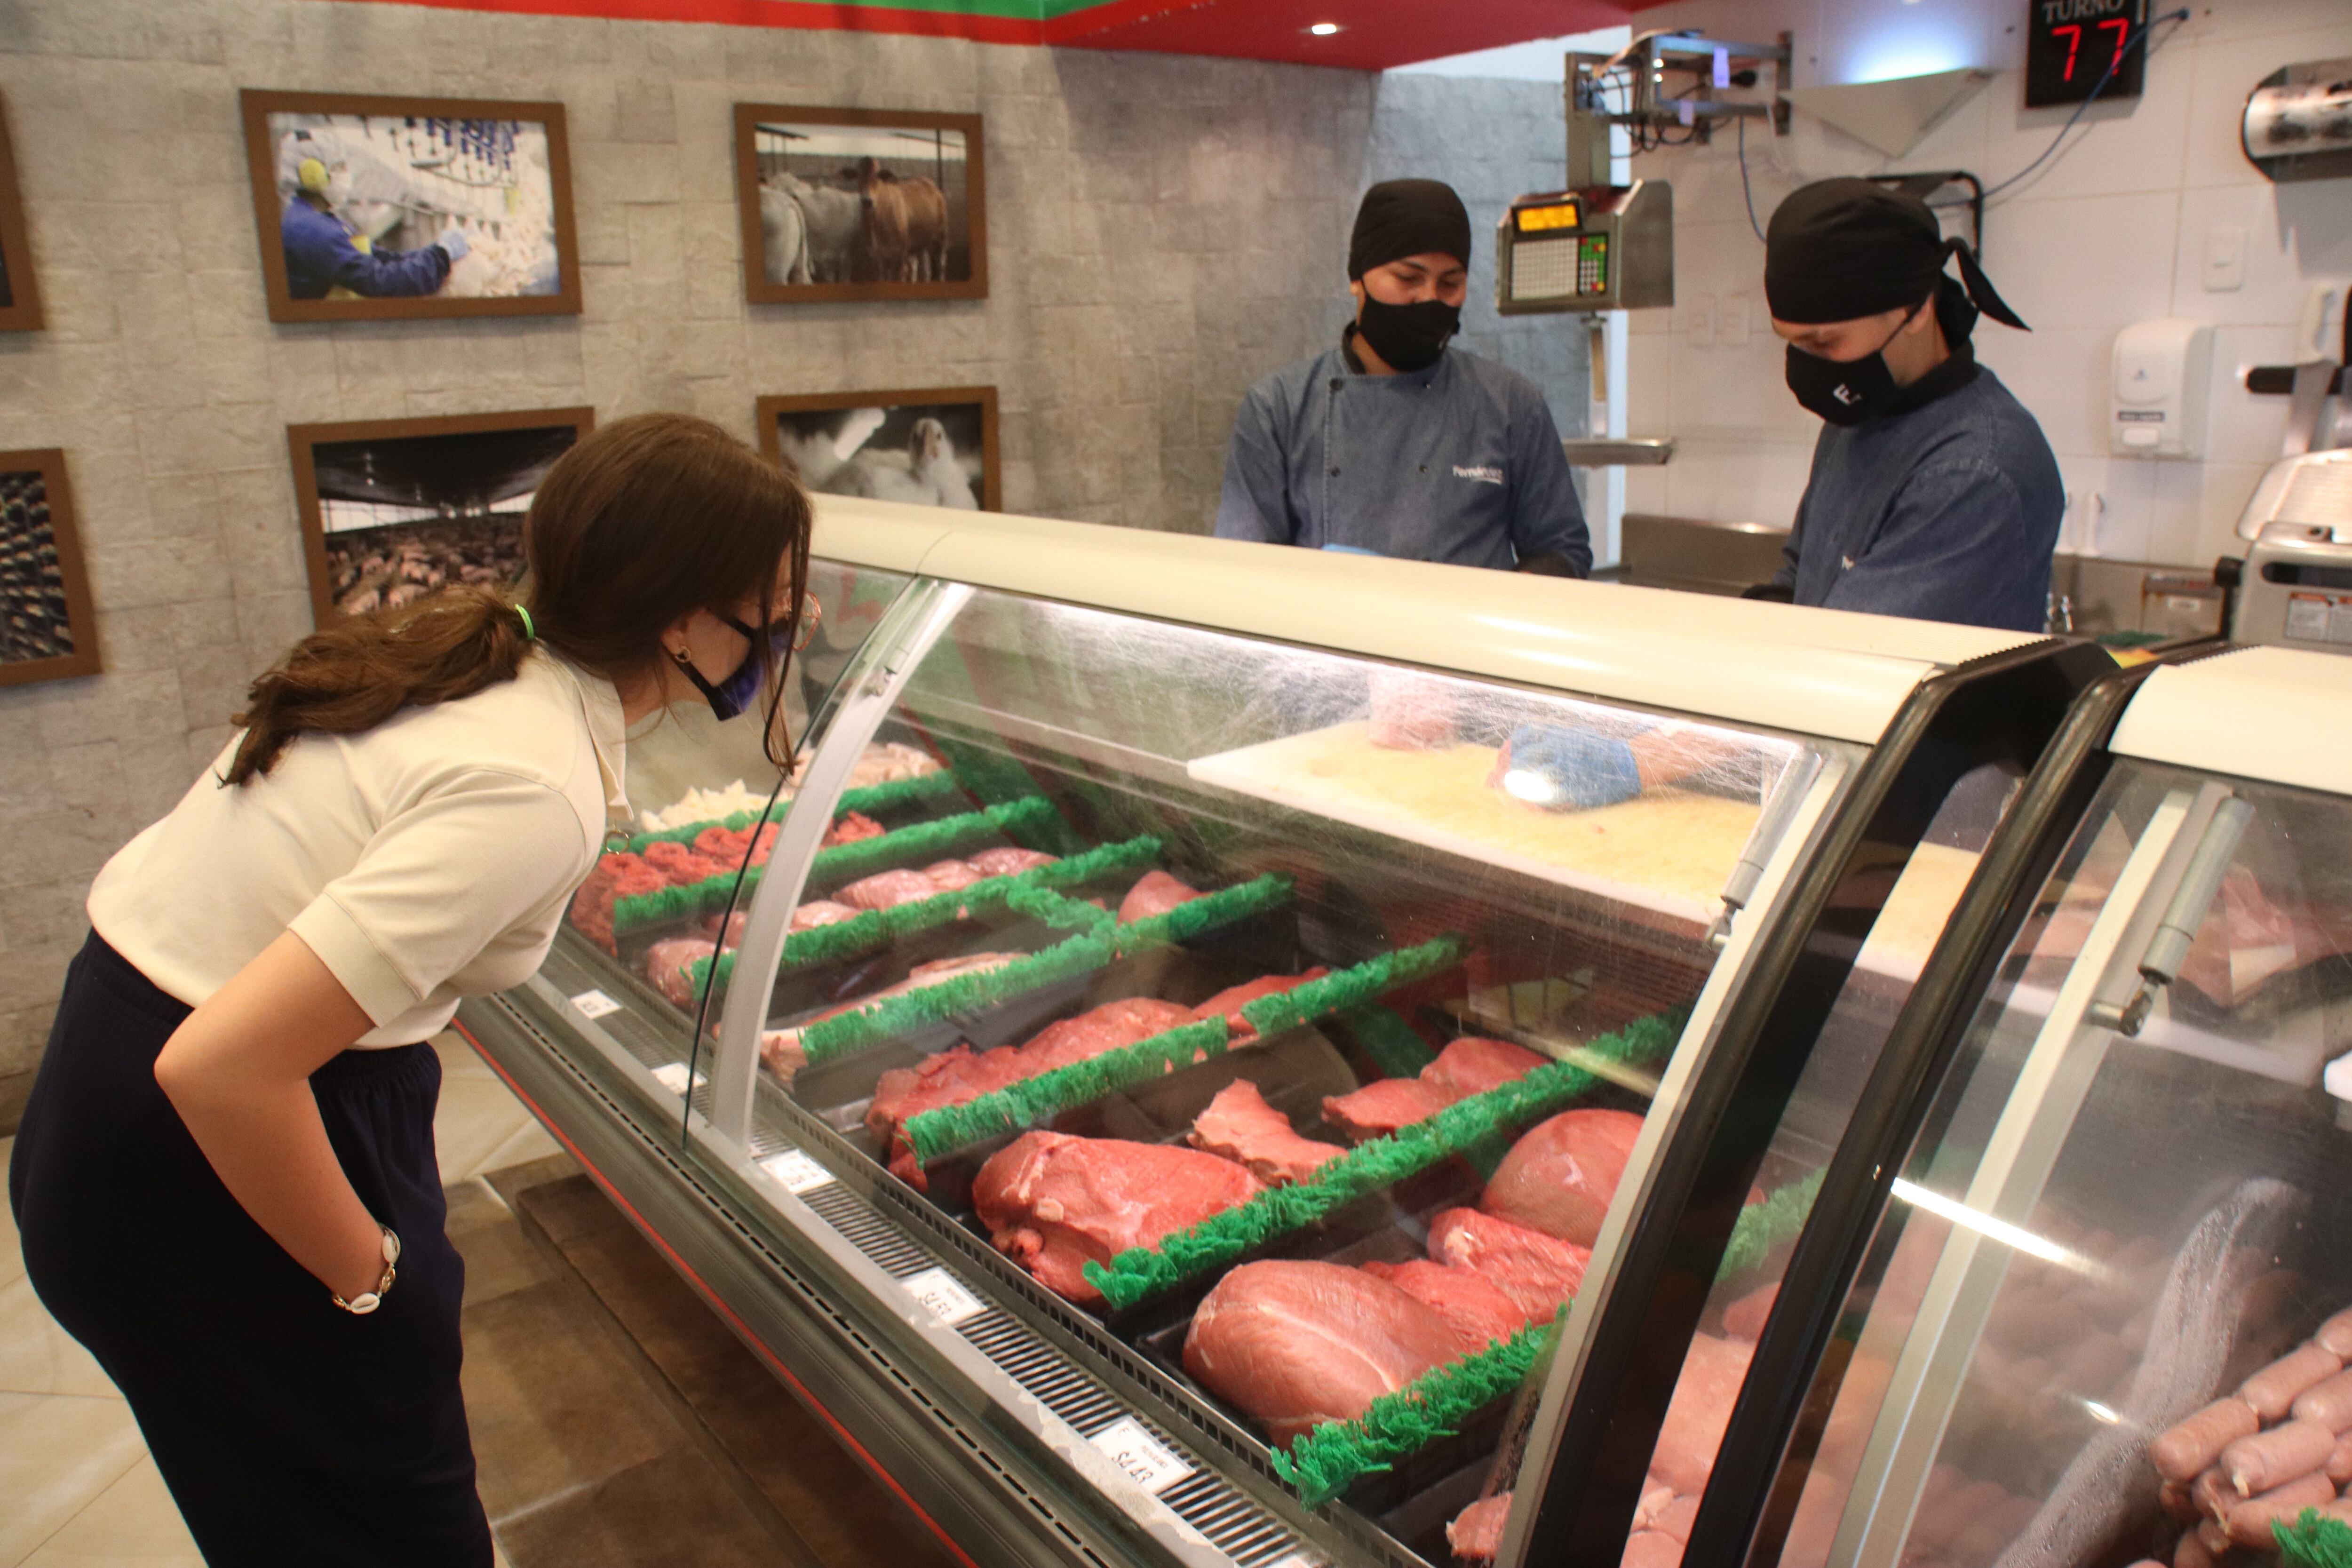 Comprar carnes y embutidos para hacer un asado o parrillada, es una de las opciones de los ciudadanos en las últimas horas del feriado. Foto: Ronald  Cedeño 